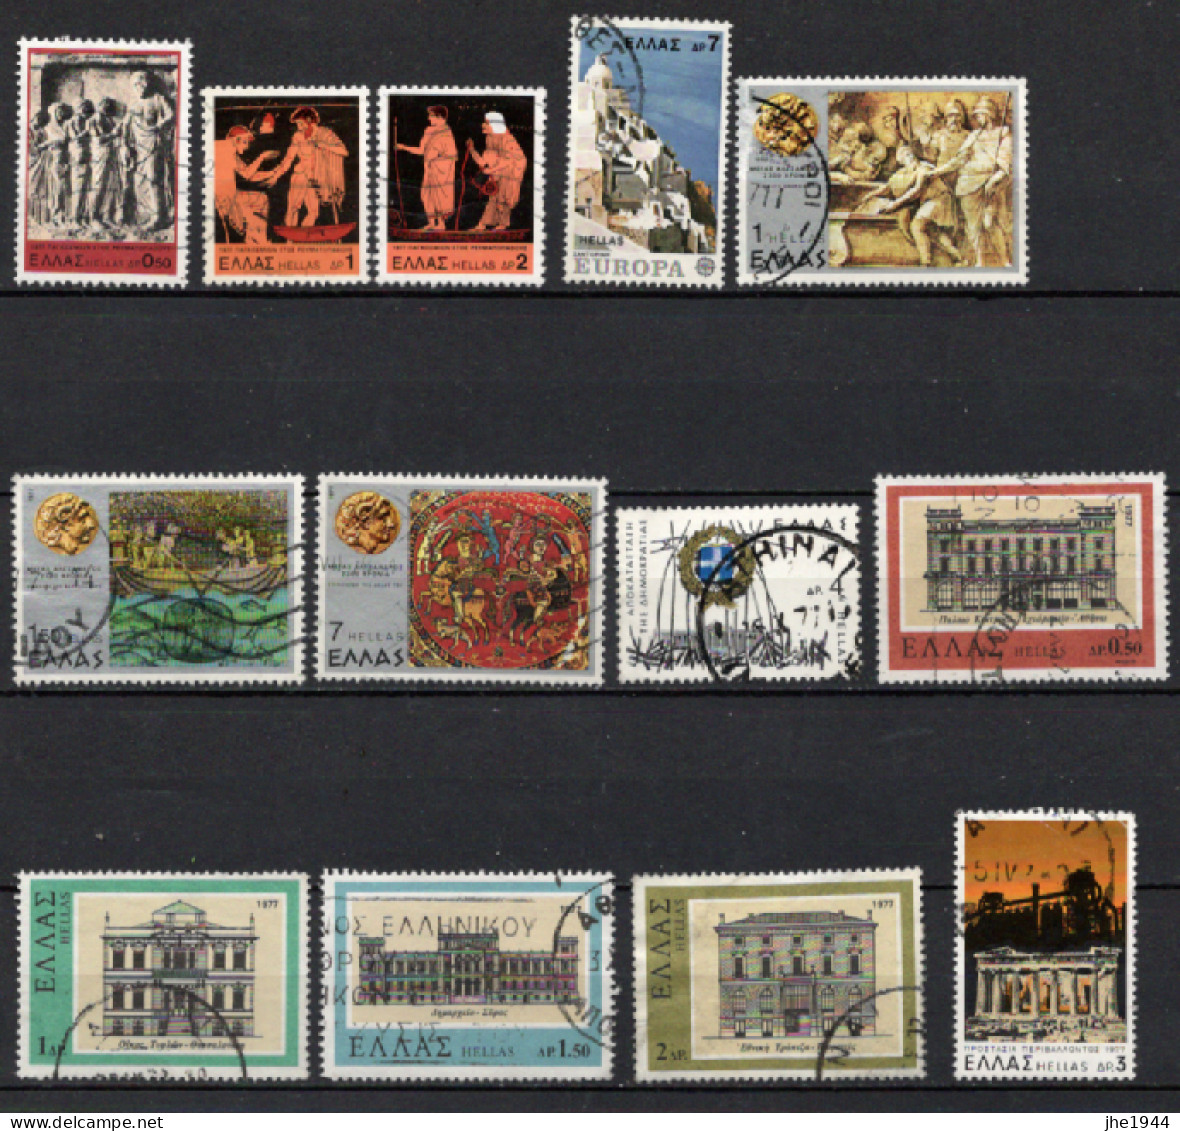 Grece N° 1103 à 1263  Ensemble 63 Timbres (Voir Détail) - Used Stamps